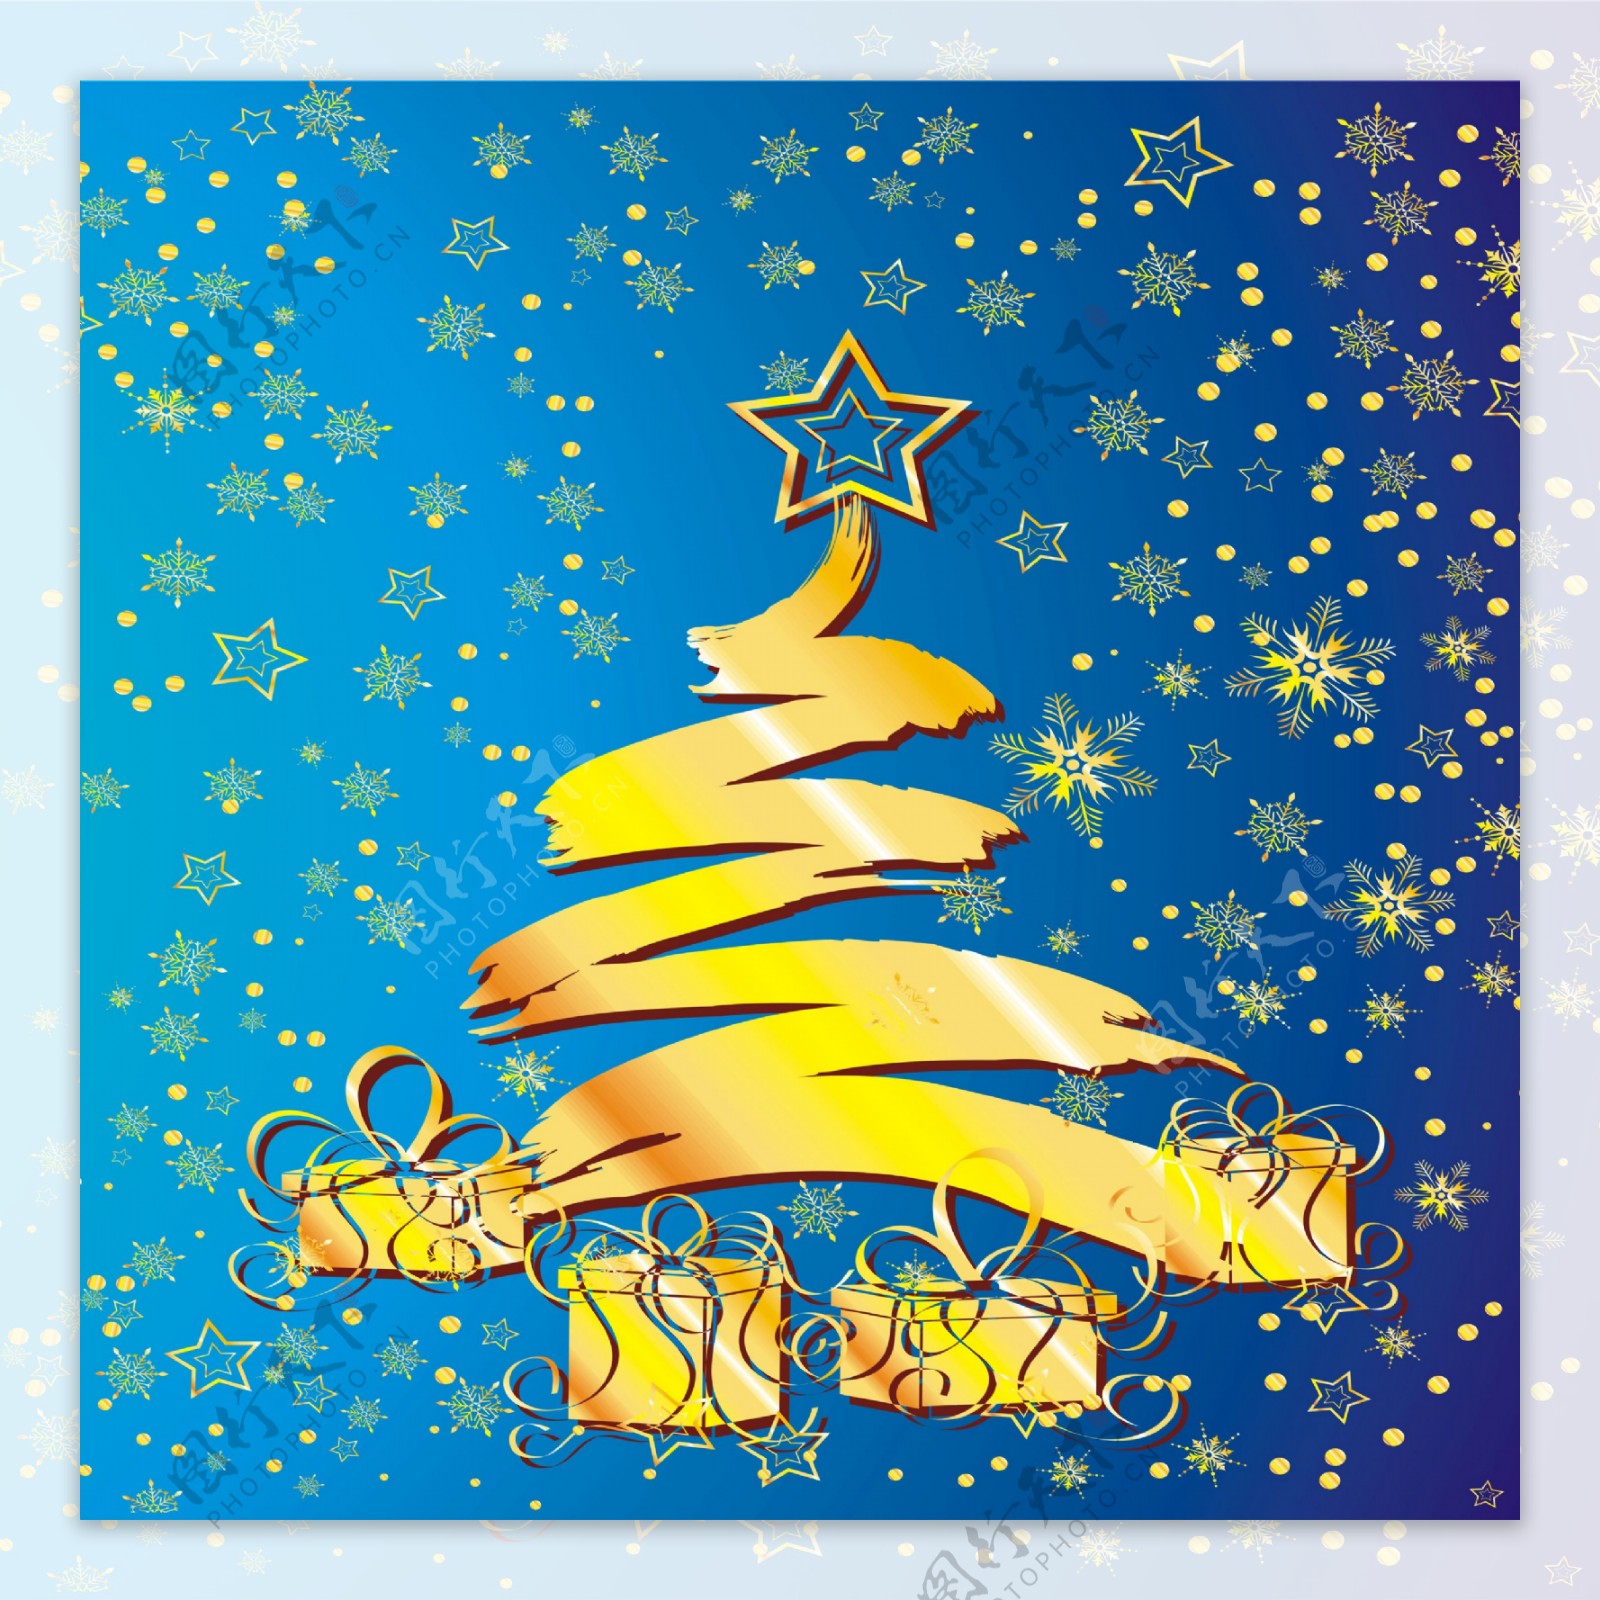 炫丽涂鸦圣诞树雪花漫天装饰画